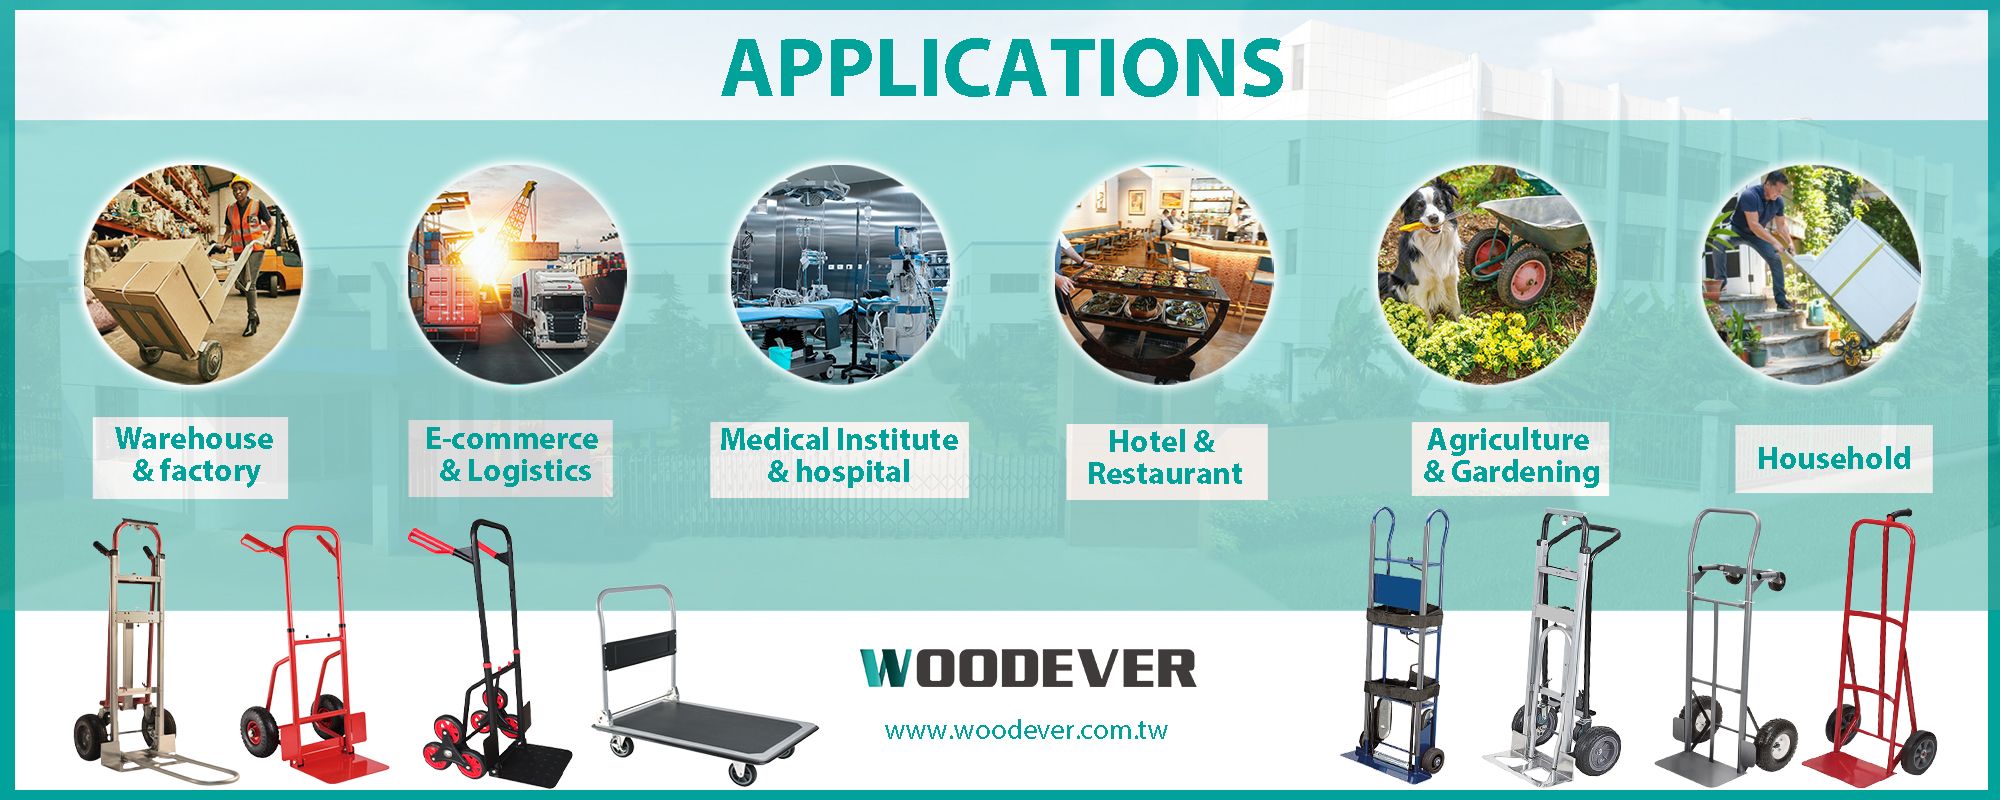 Applicazioni di carrelli elevatori in vari settori come logistica, medicale, alberghiero e ristorazione